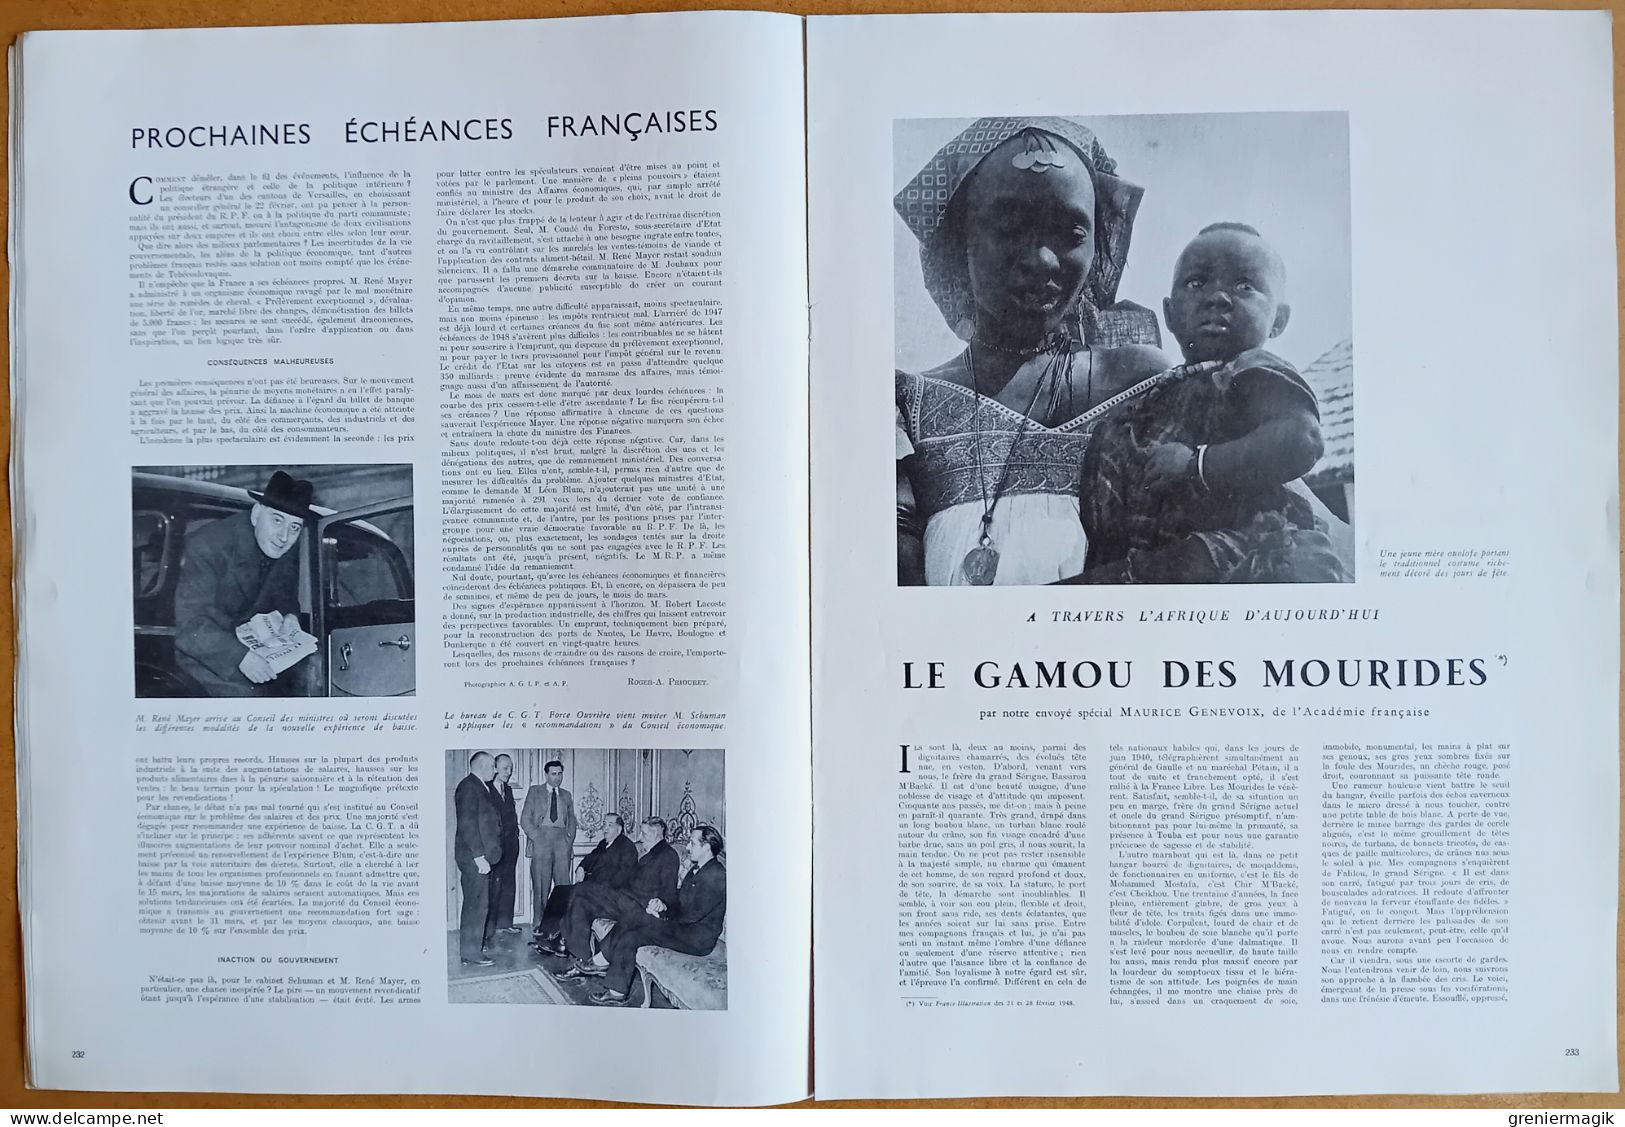 France Illustration N°127 06/03/1948 Coup d'état de Prague/Le Gamou des Mourides par Maurice Genevoix/Arts ménagers